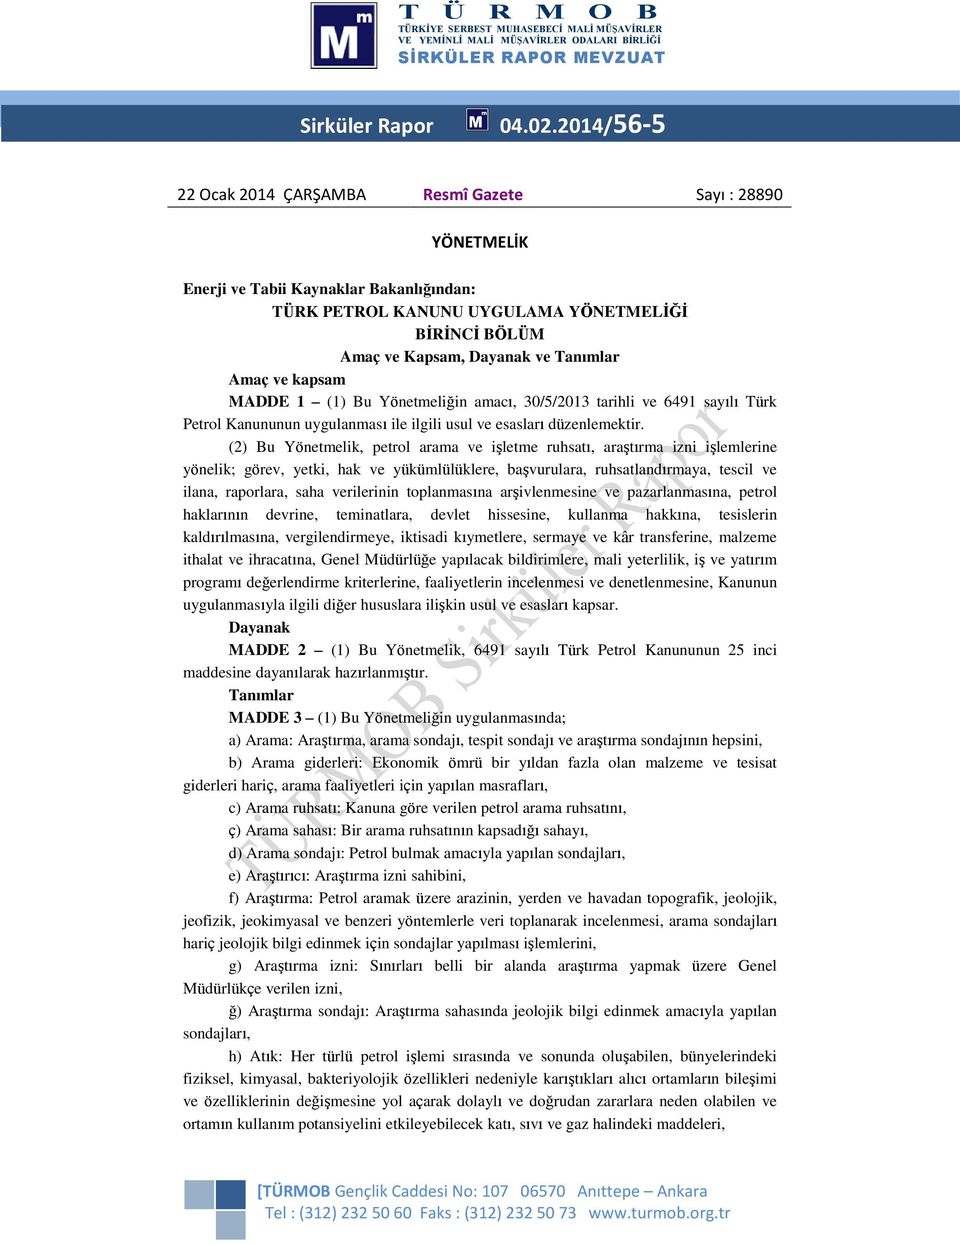 Amaç ve kapsam MADDE 1 (1) Bu Yönetmeliğin amacı, 30/5/2013 tarihli ve 6491 sayılı Türk Petrol Kanununun uygulanması ile ilgili usul ve esasları düzenlemektir.